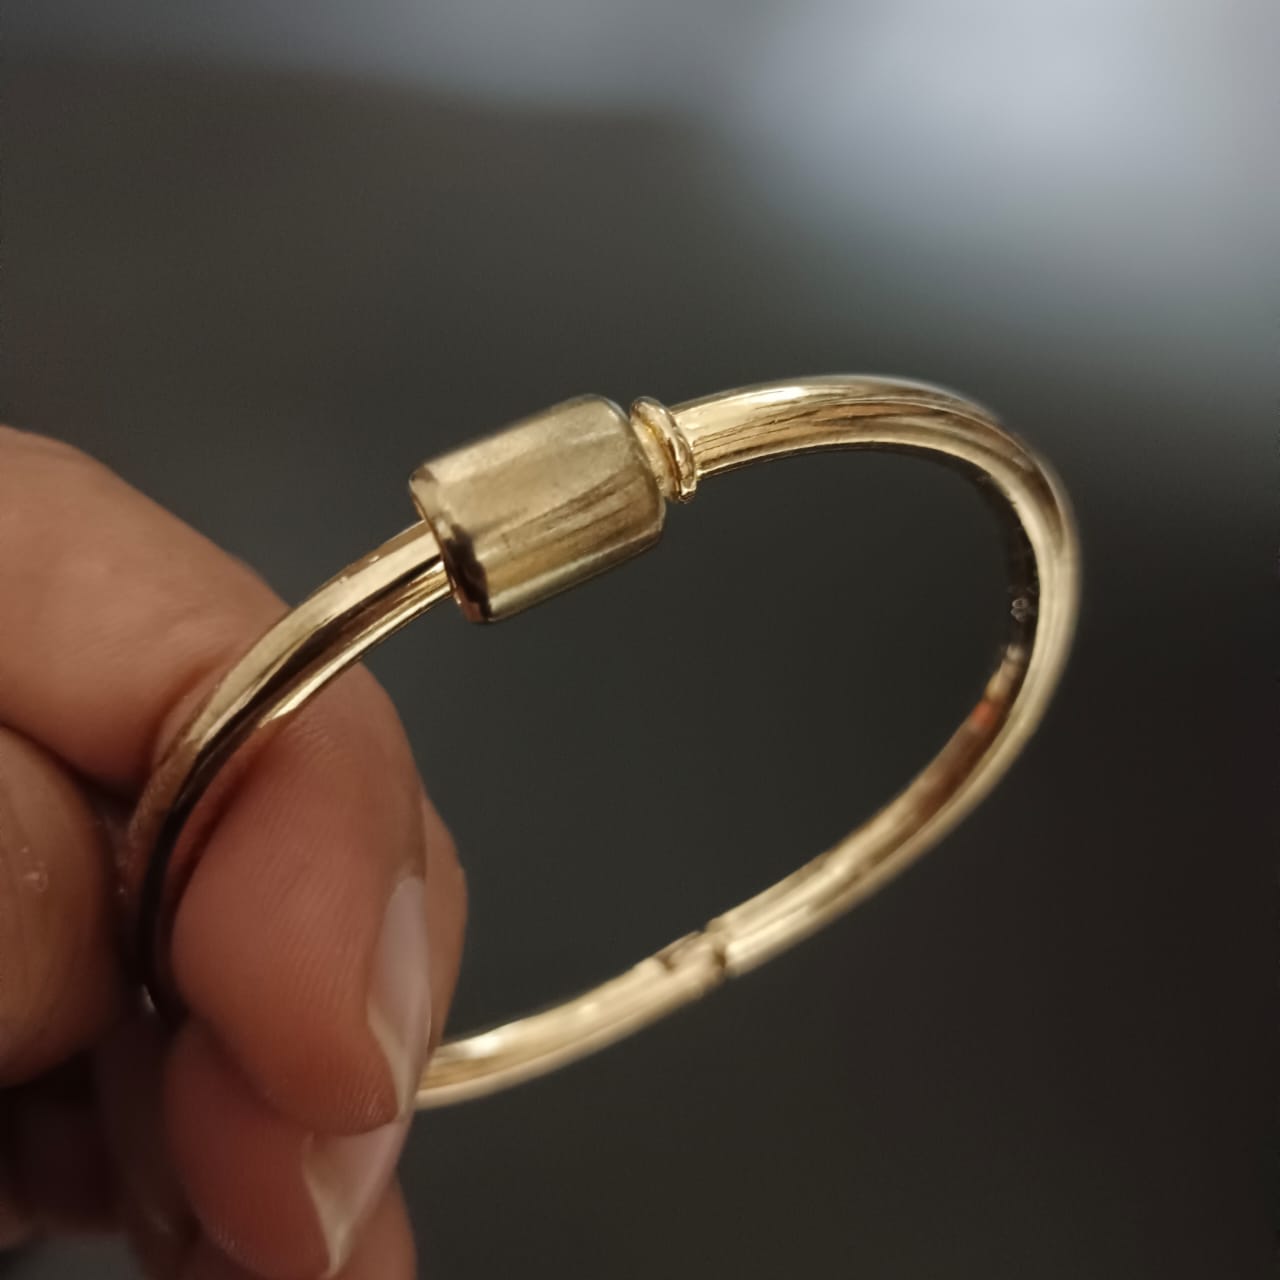 New Golden Design Kada Bracelet For Women